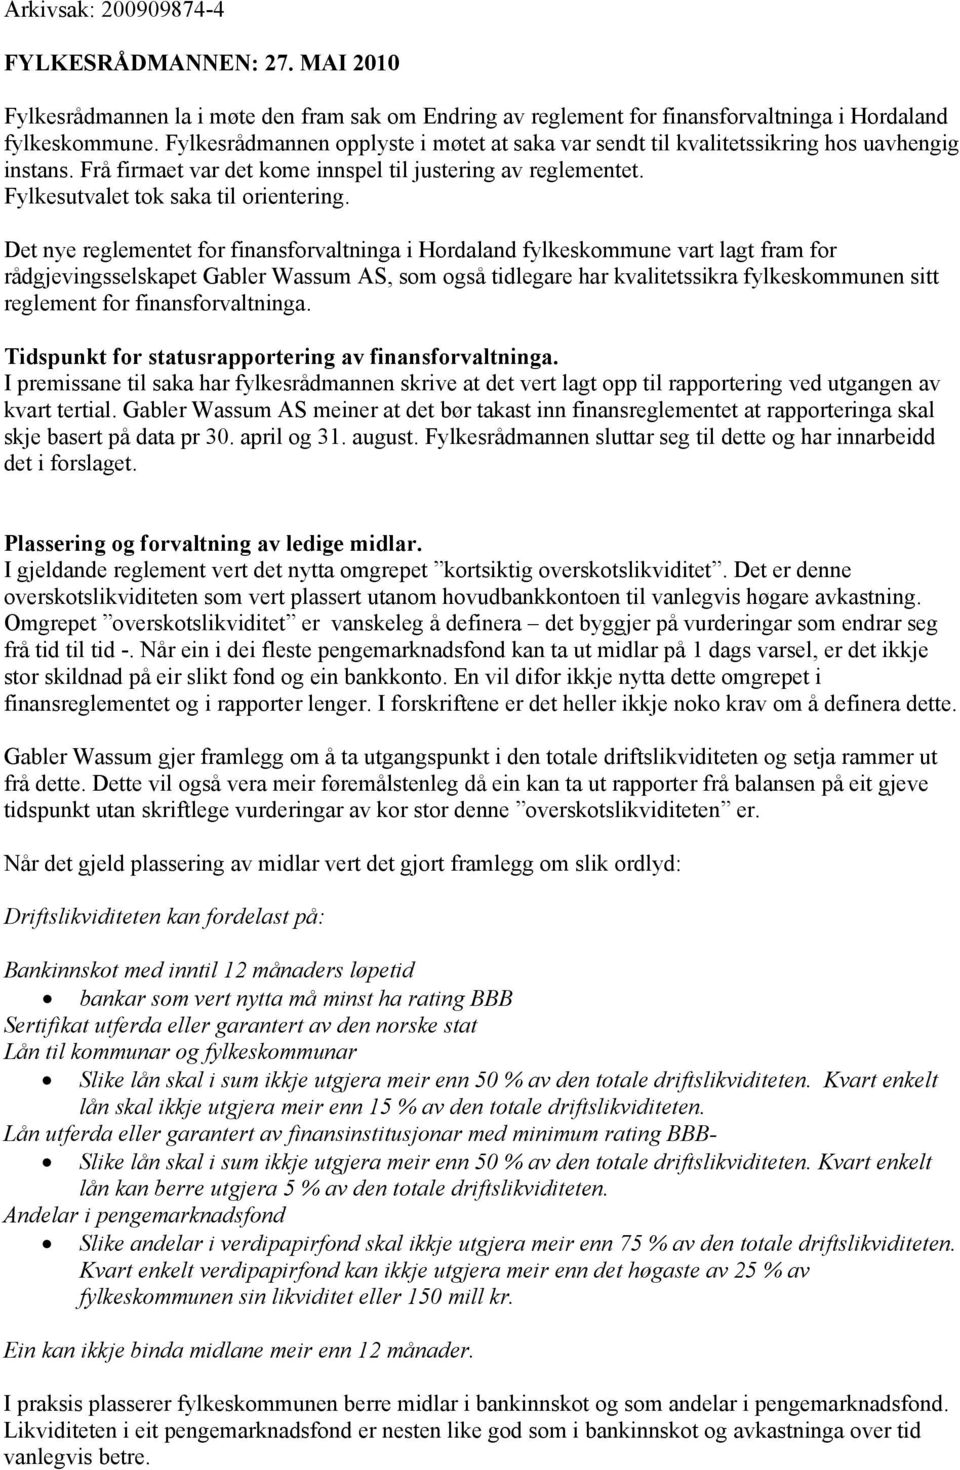 Det nye reglementet for finansforvaltninga i Hordaland fylkeskommune vart lagt fram for rådgjevingsselskapet Gabler Wassum AS, som også tidlegare har kvalitetssikra fylkeskommunen sitt reglement for